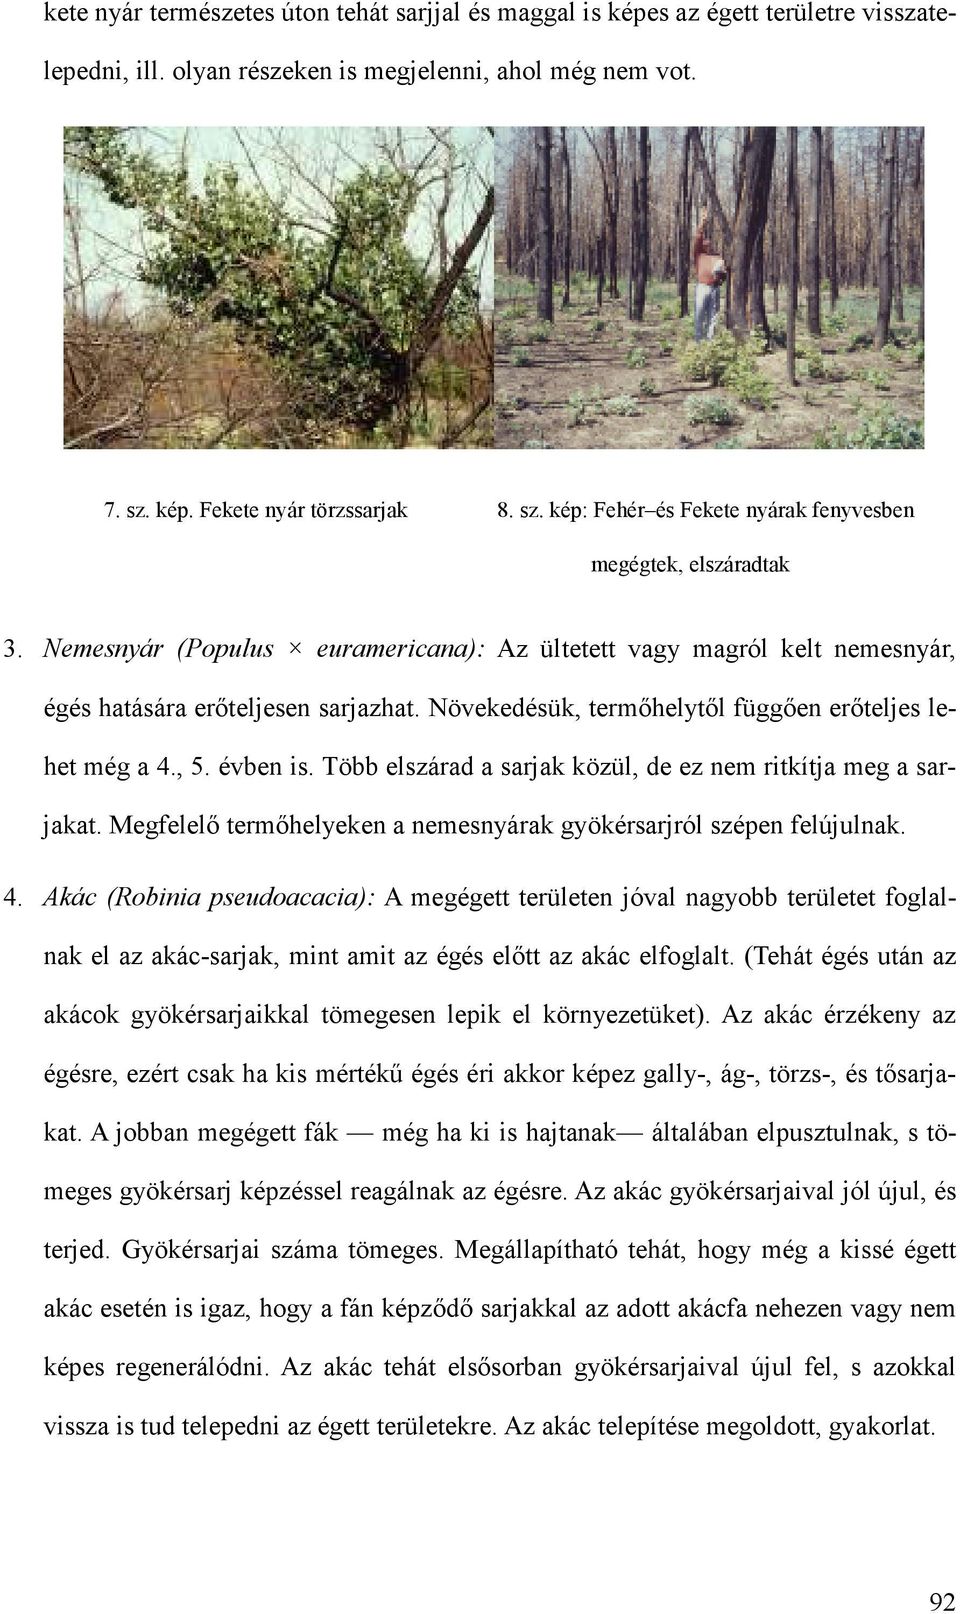 Nemesnyár (Populus euramericana): Az ültetett vagy magról kelt nemesnyár, égés hatására erıteljesen sarjazhat. Növekedésük, termıhelytıl függıen erıteljes lehet még a 4., 5. évben is.